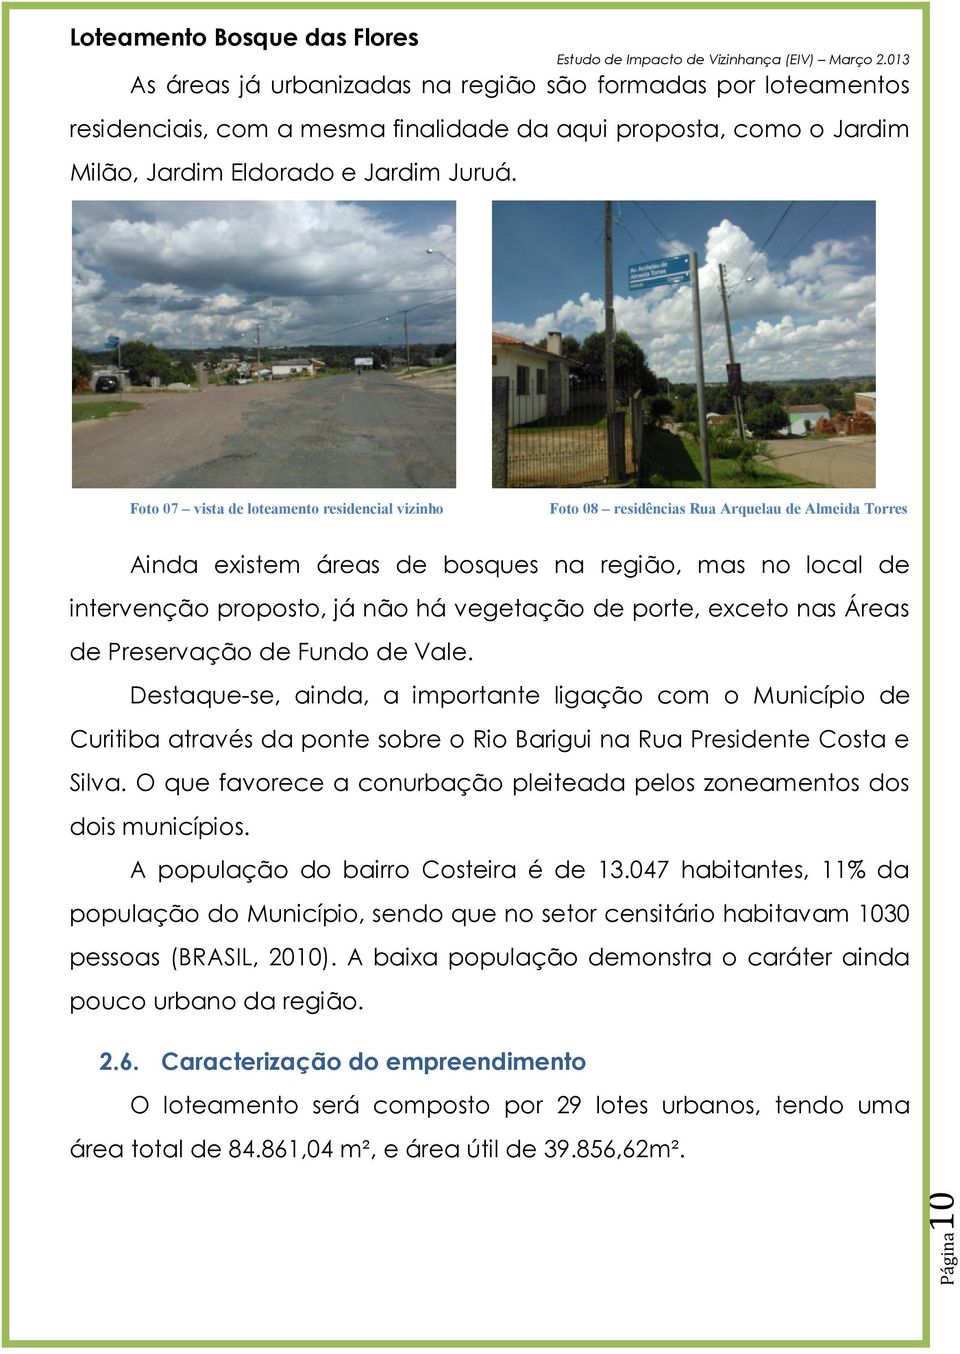 de porte, exceto nas Áreas de Preservação de Fundo de Vale. Destaque-se, ainda, a importante ligação com o Município de Curitiba através da ponte sobre o Rio Barigui na Rua Presidente Costa e Silva.